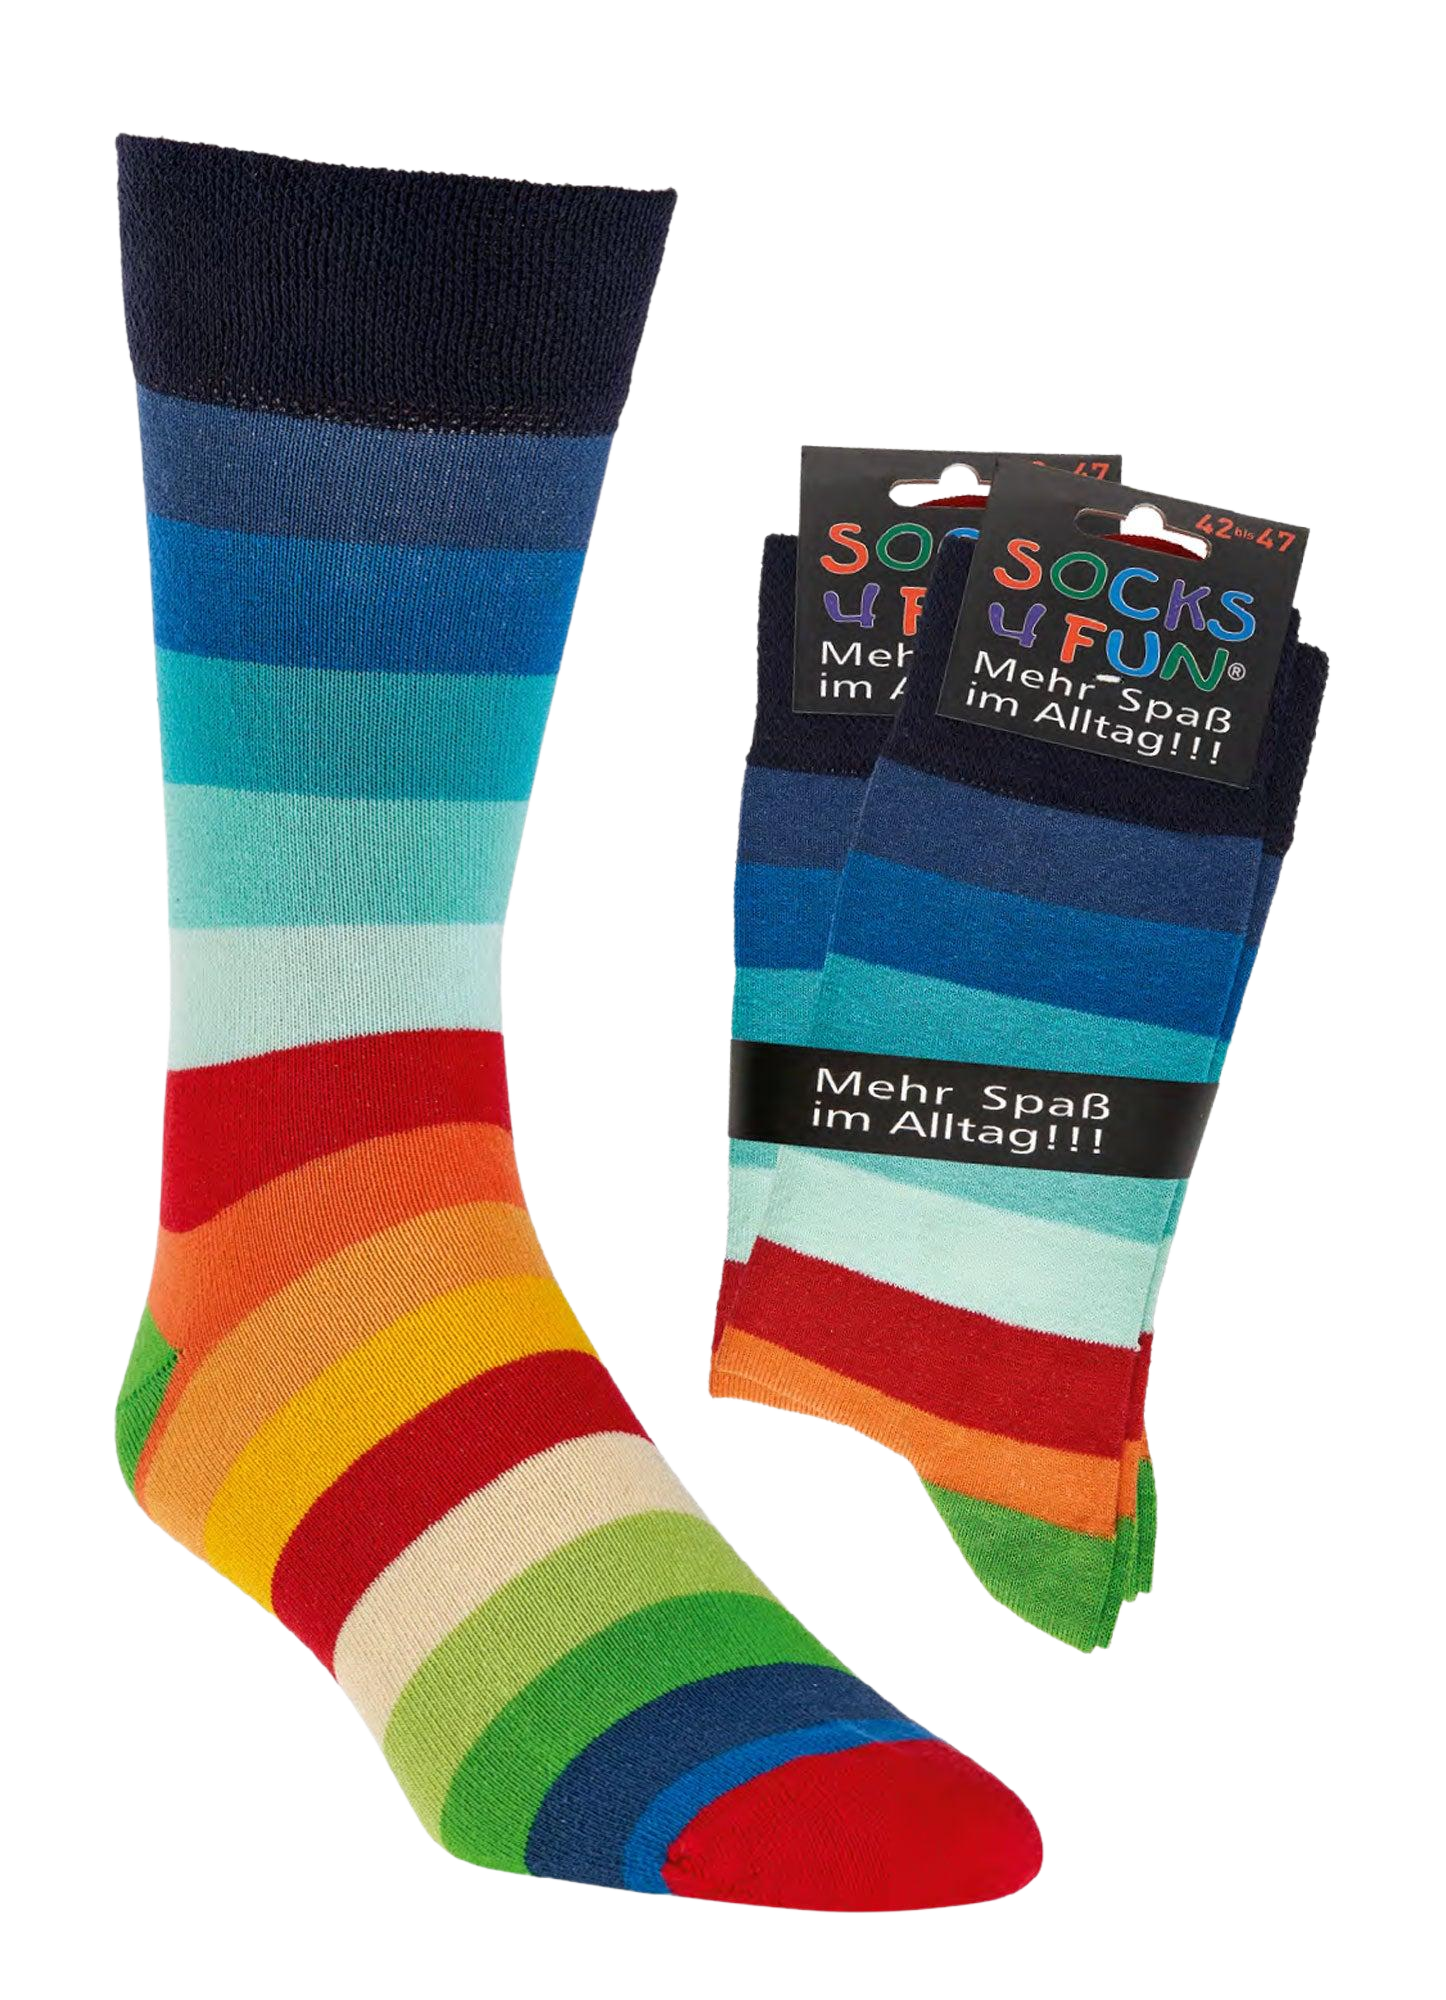 Das Bild zeigt die Regenbogensocken im kompletten in leuchtend krellen Farben und im Bündel. Die Socken sind bestens für alle geeignet die es bunt mögen.